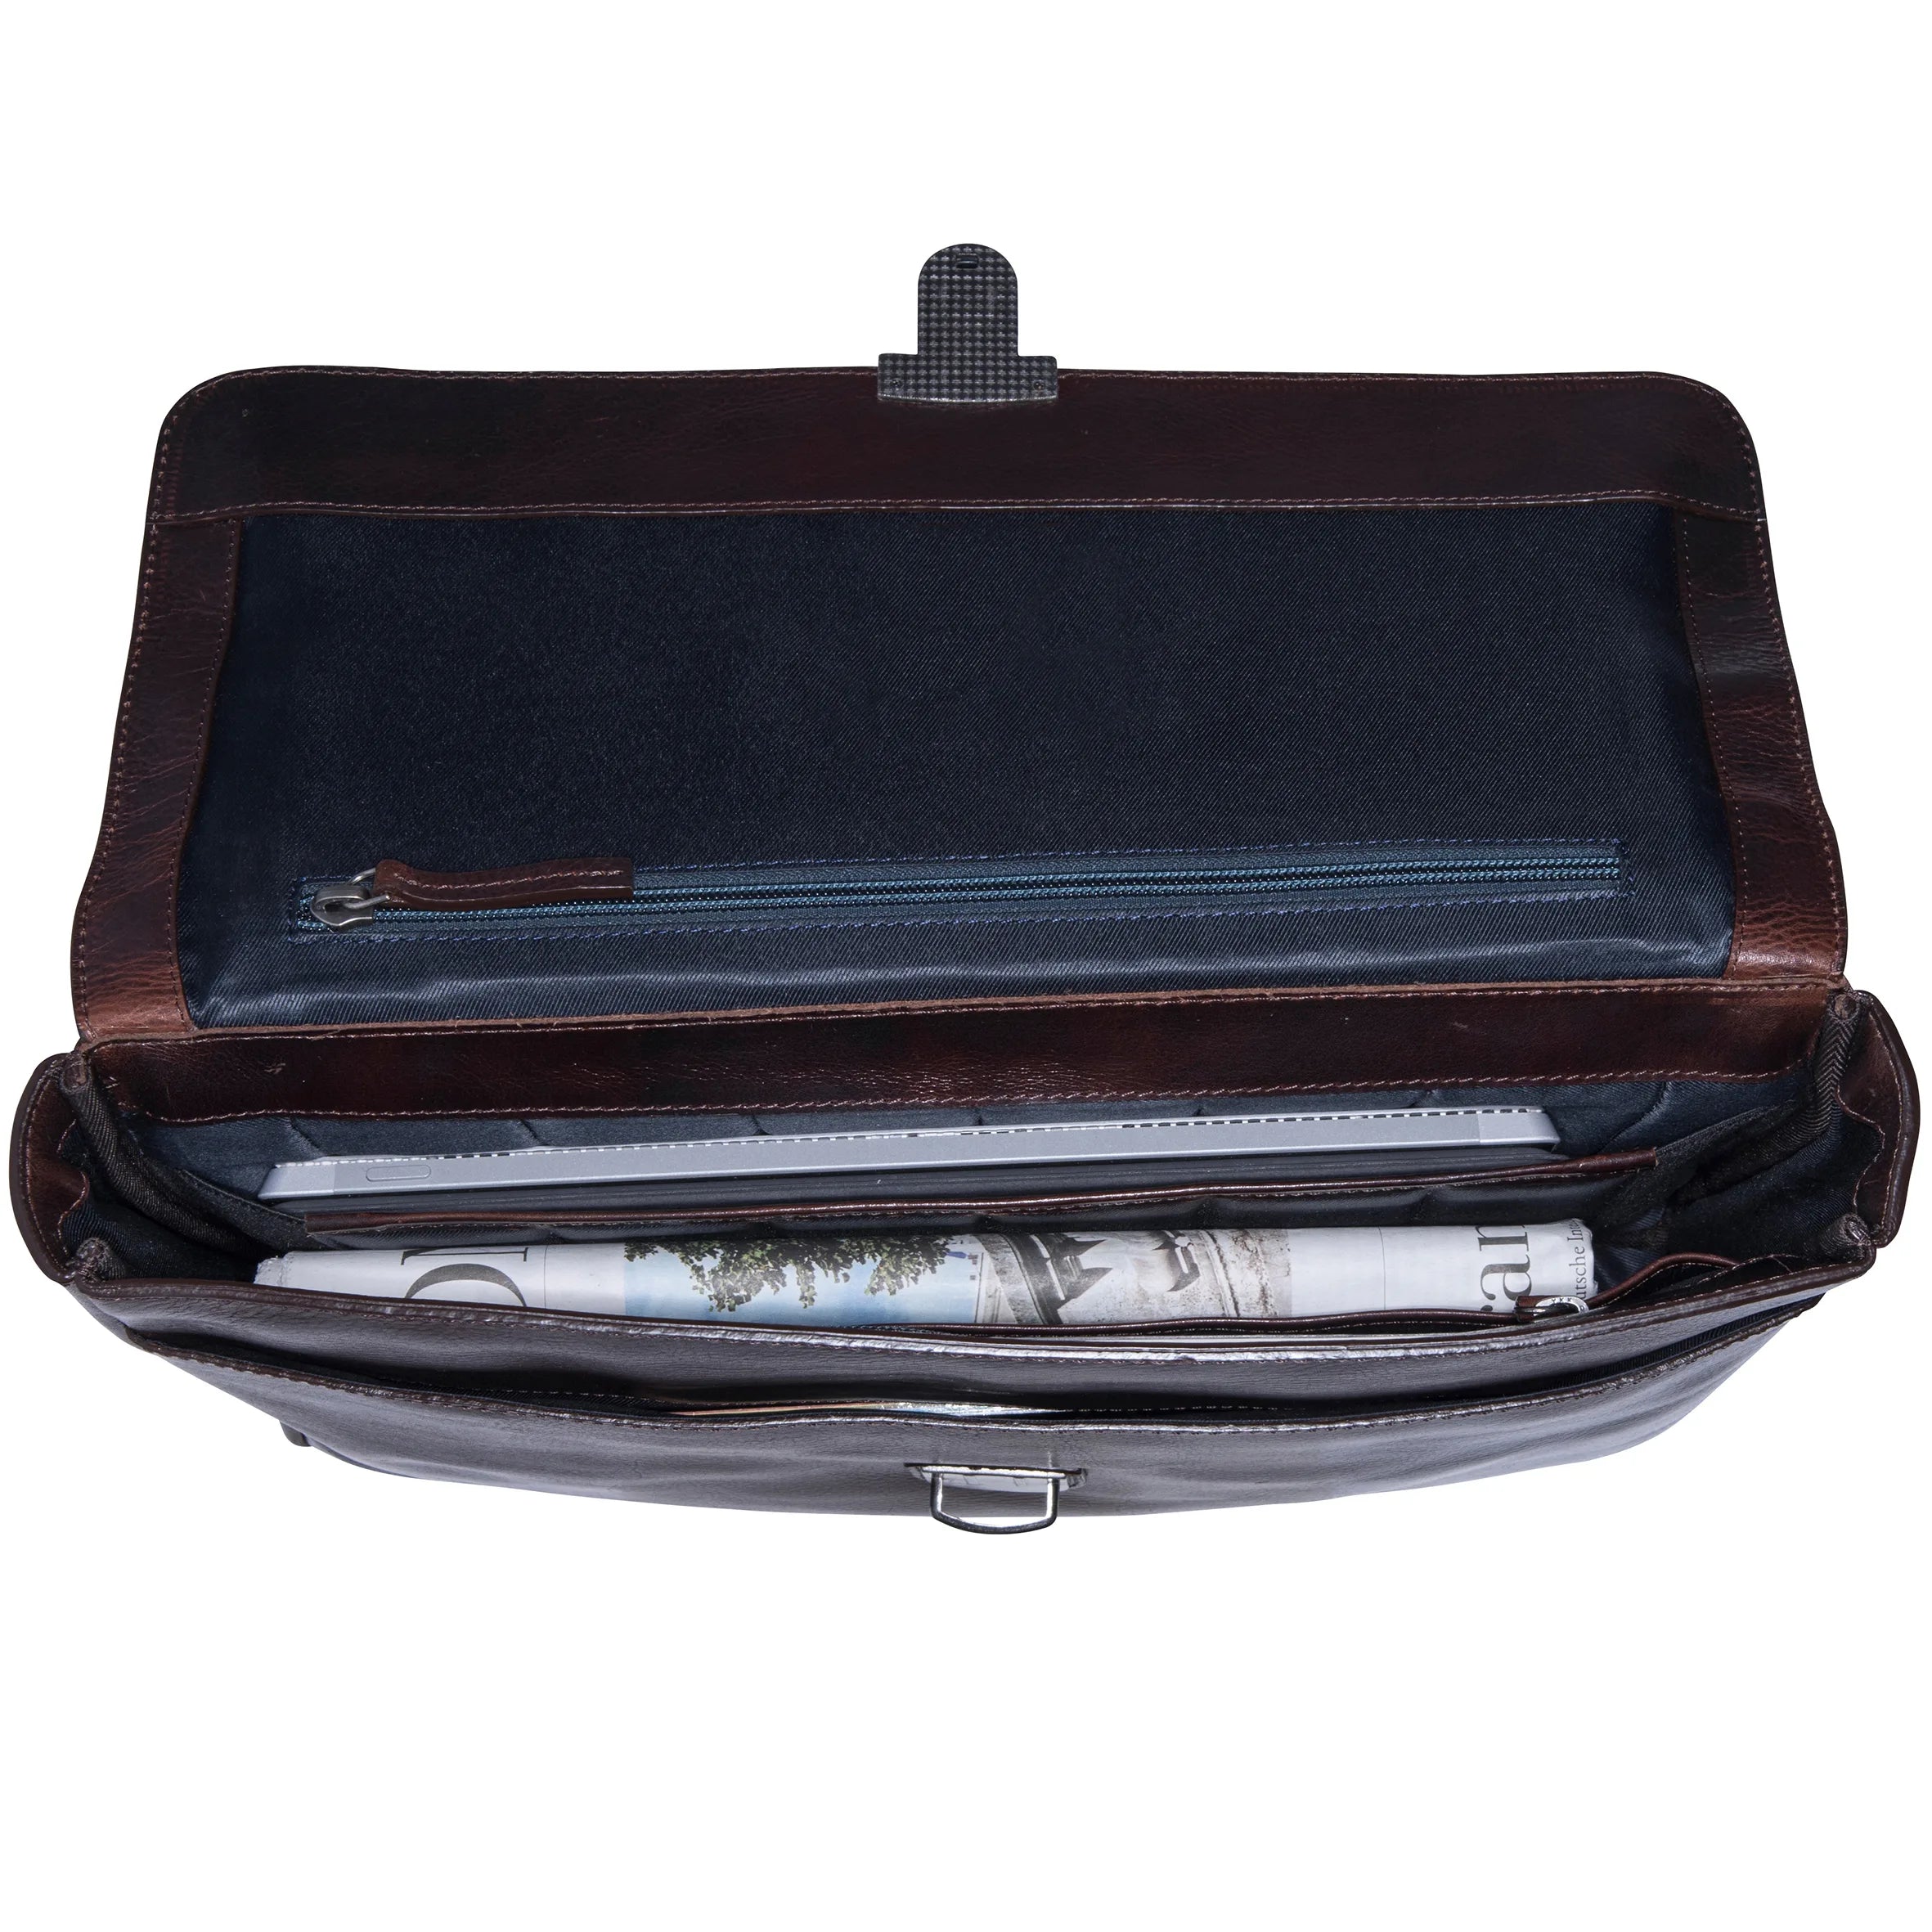 Leonhard Heyden Roma briefcase 38 cm - black